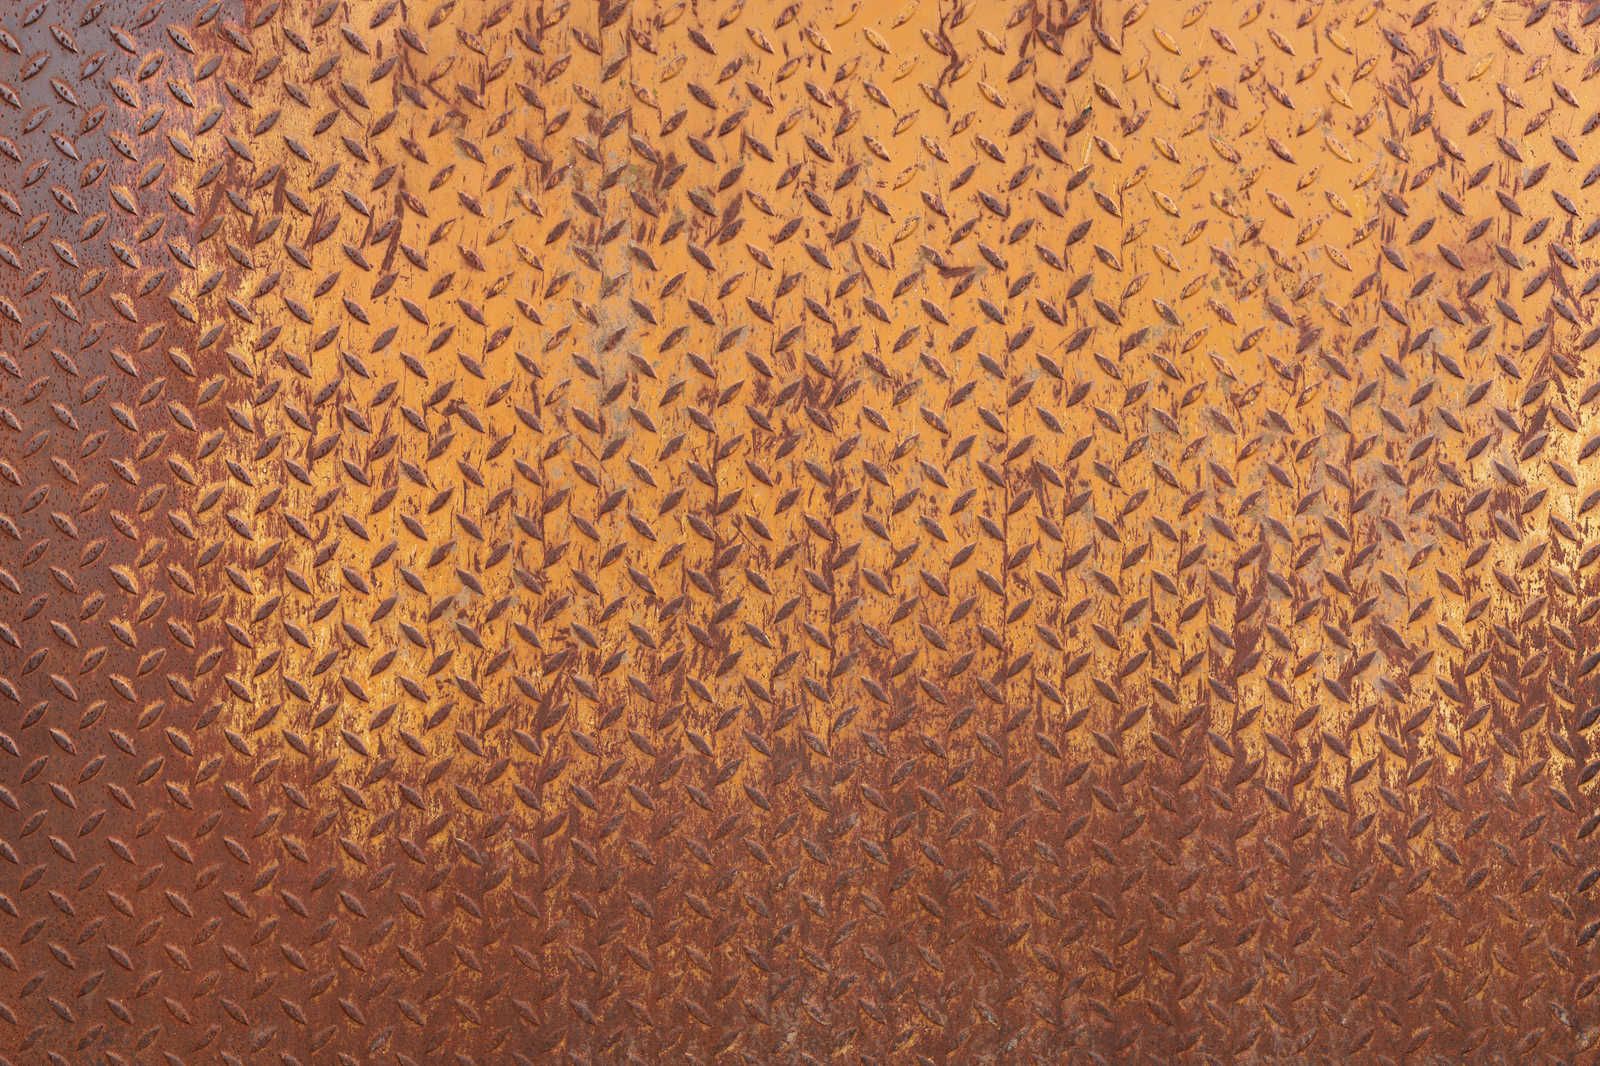             Toile métallique Plaque d'acier rouille avec motif diamant - 1,20 m x 0,80 m
        